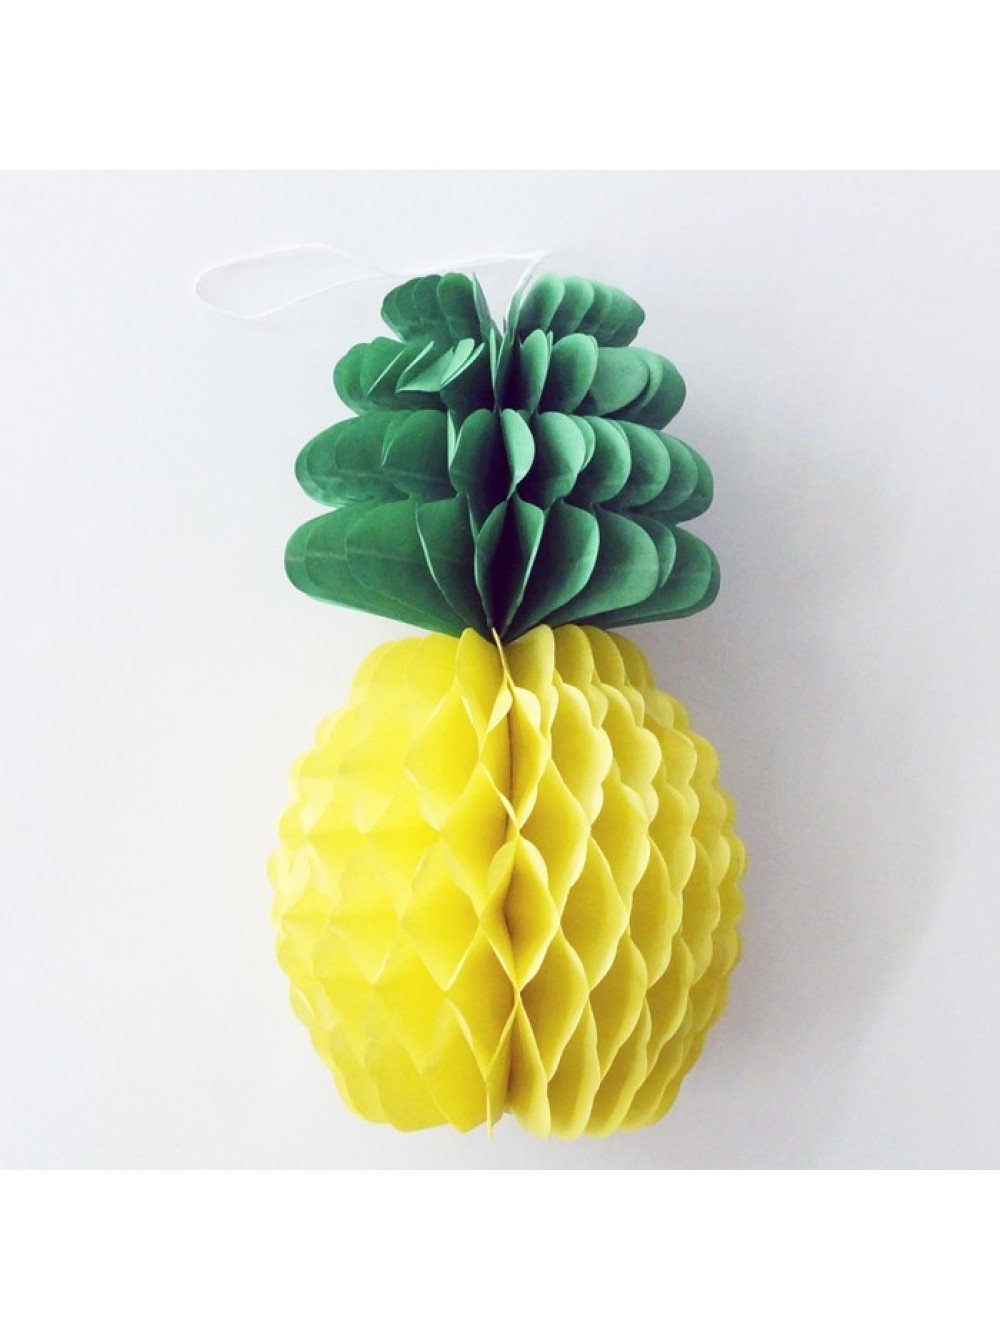 Поделки ананас из цветной бумаги и картона идеи по изготовлению своими руками фото